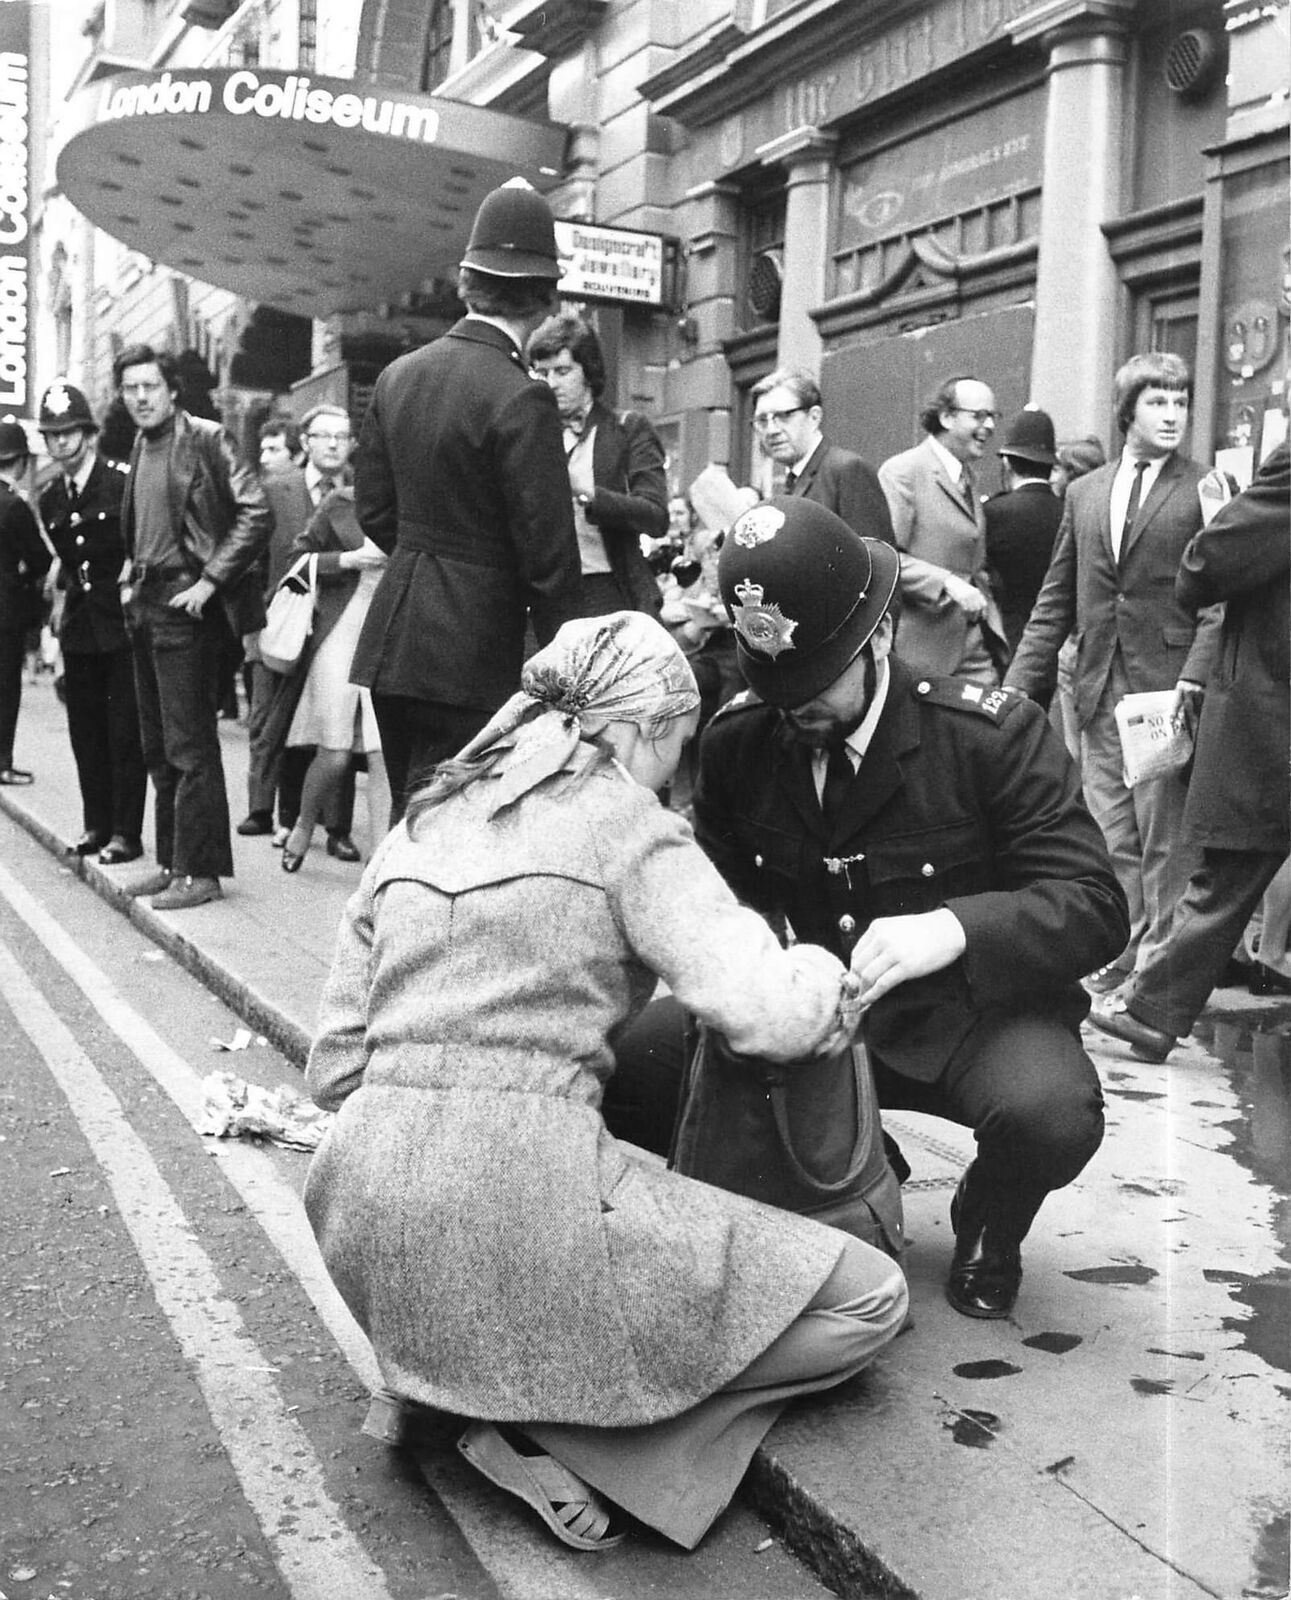 1974 Press Photo Policeman Searching Woman's Bag London Coliseum Bolshoi Ballett